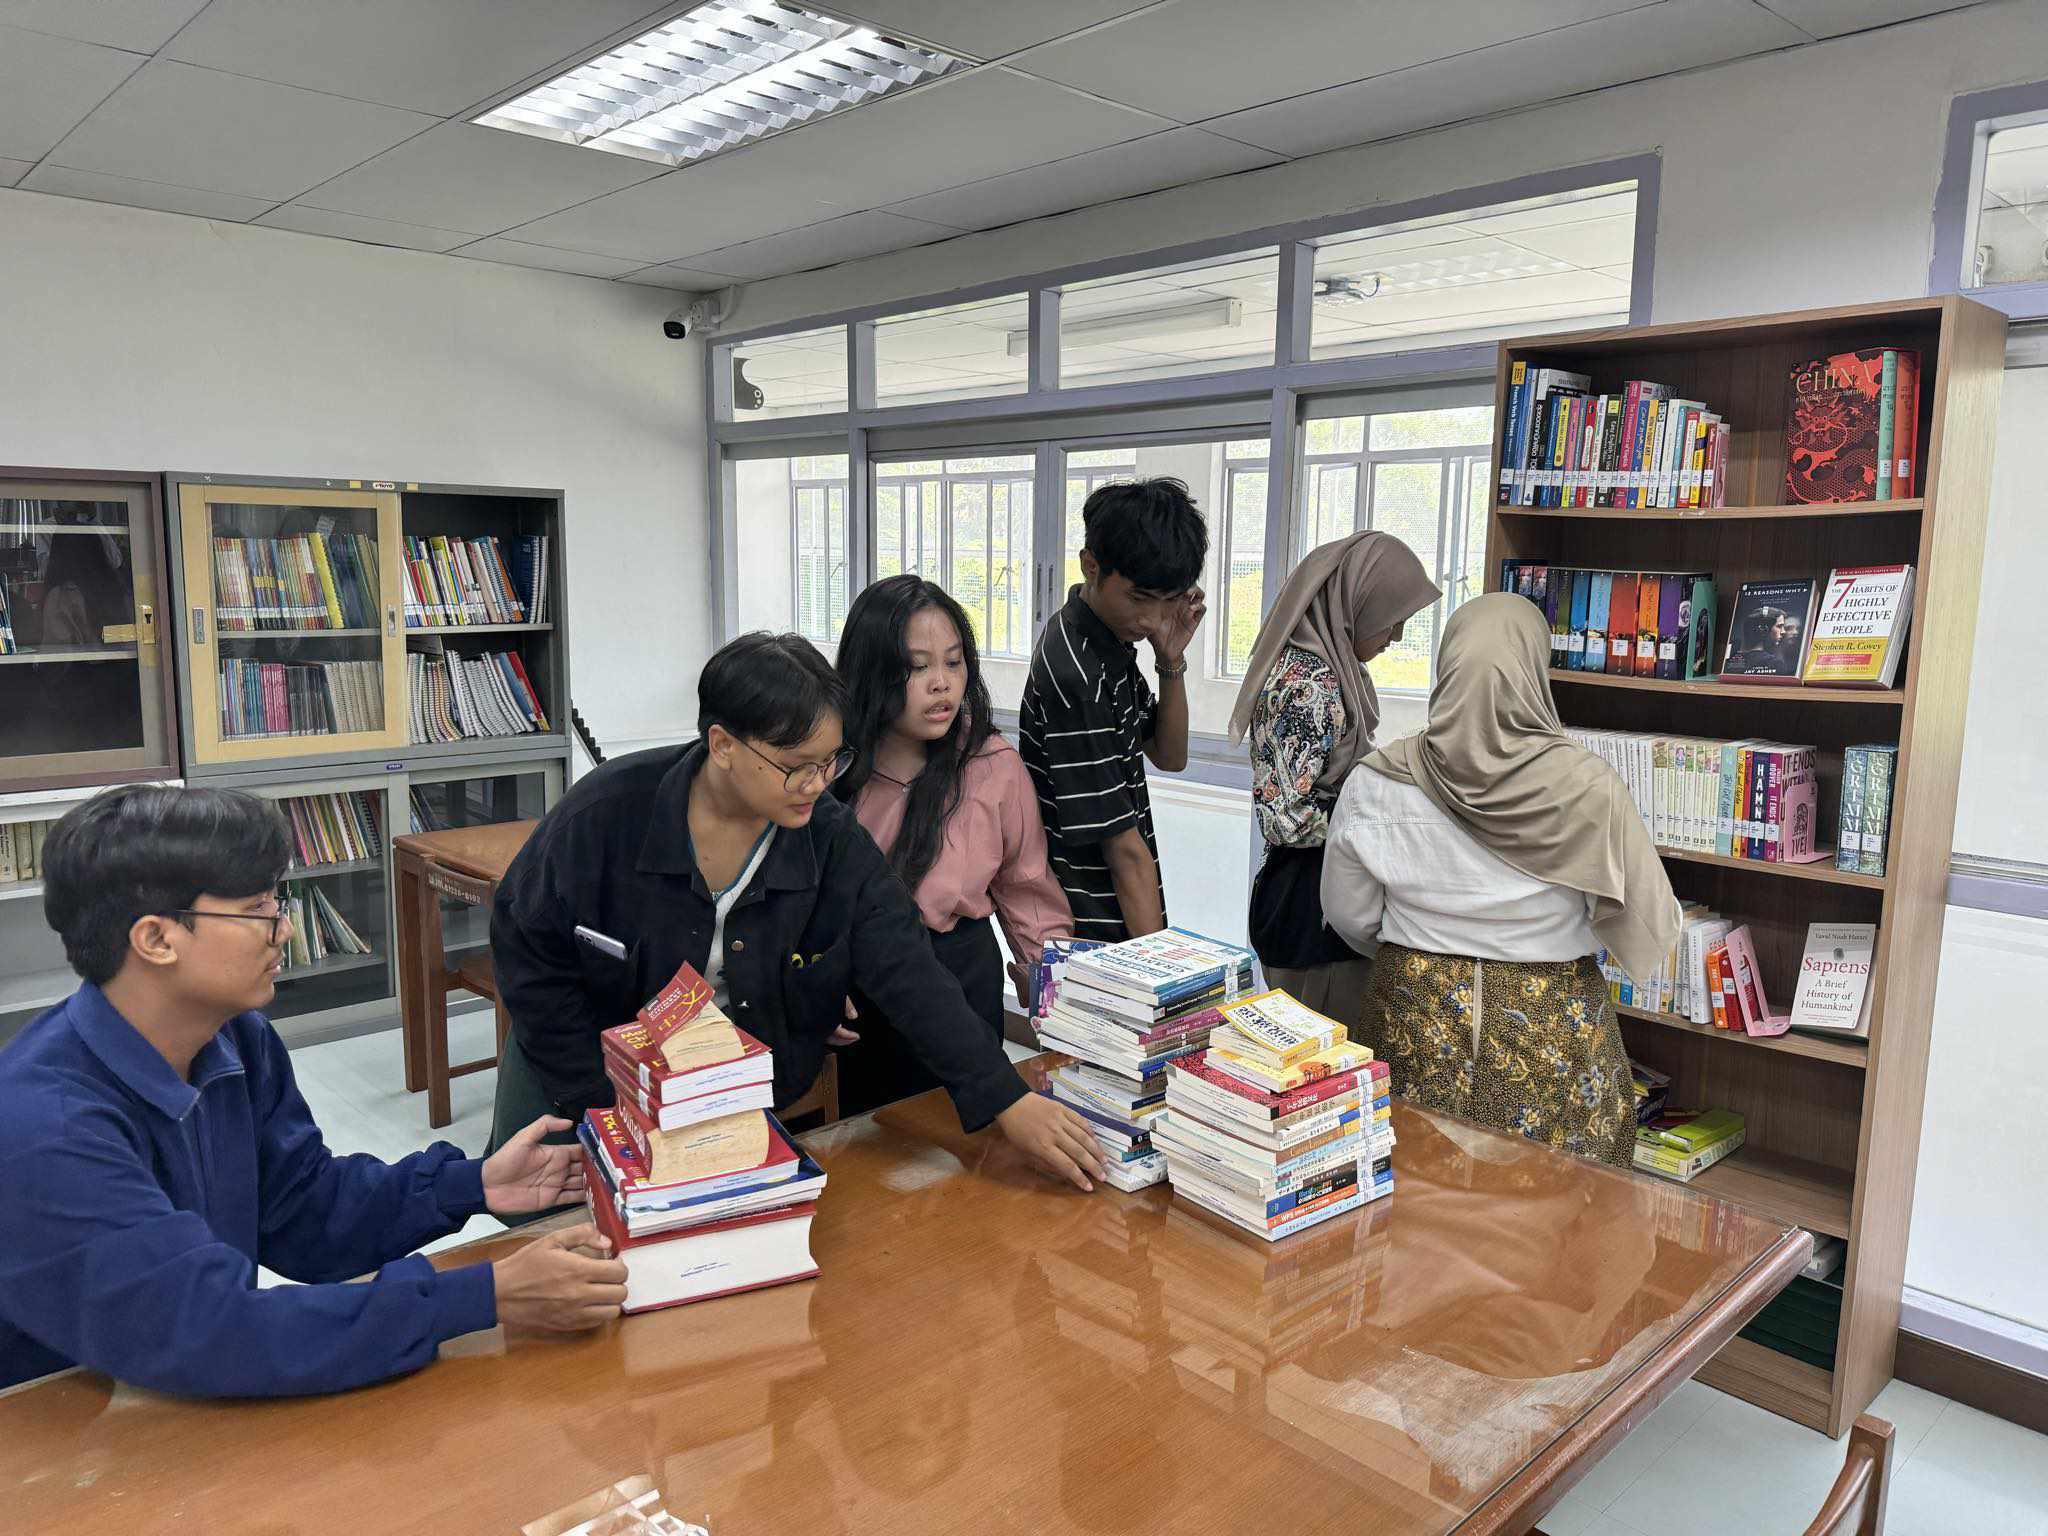 24. ต้อนรับนักศึกษาแลกเปลี่ยนจาก Universitas Negeri Surabaya ประเทศอินโดนีเซีย เยี่ยมชมสำนักวิทยบริการและเทคโนโลยีสารสนเทศ มหาวิทยาลัยราชภัฏกำแพงเพชร